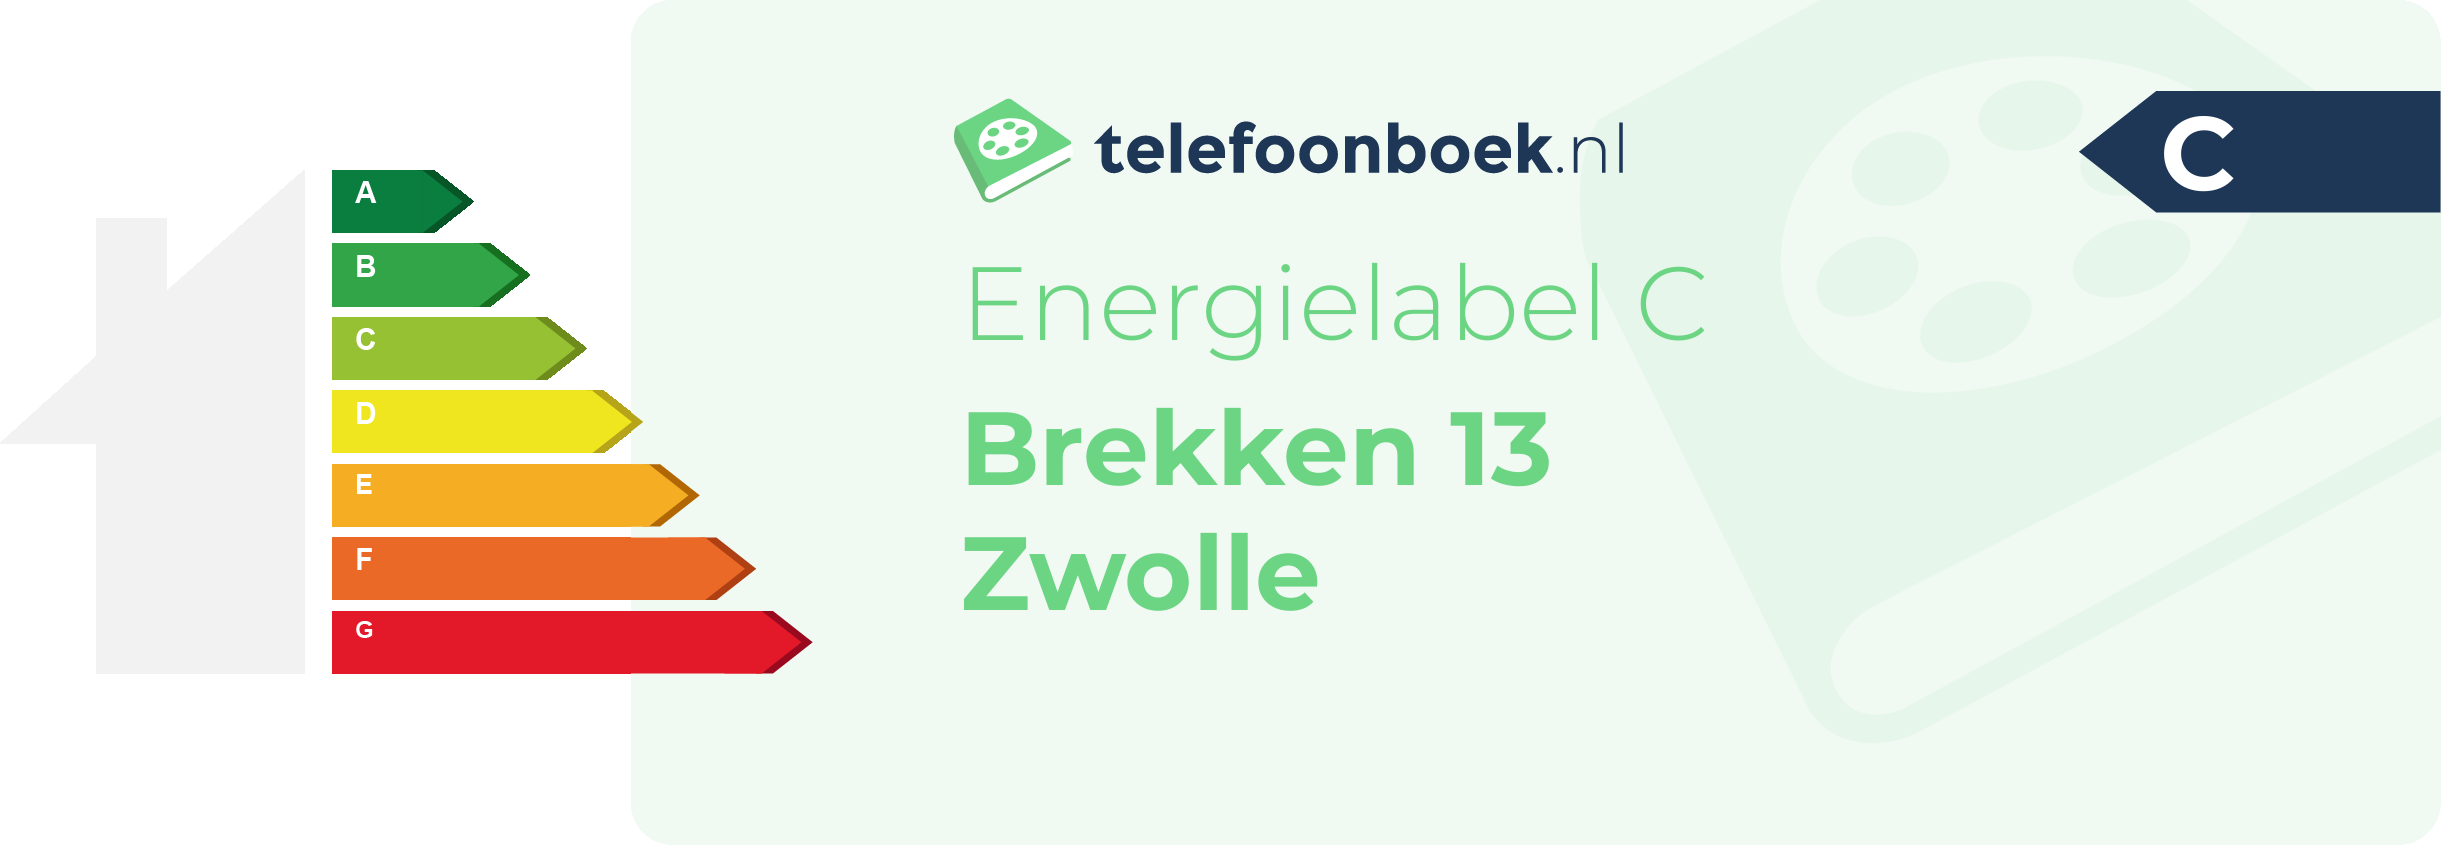 Energielabel Brekken 13 Zwolle